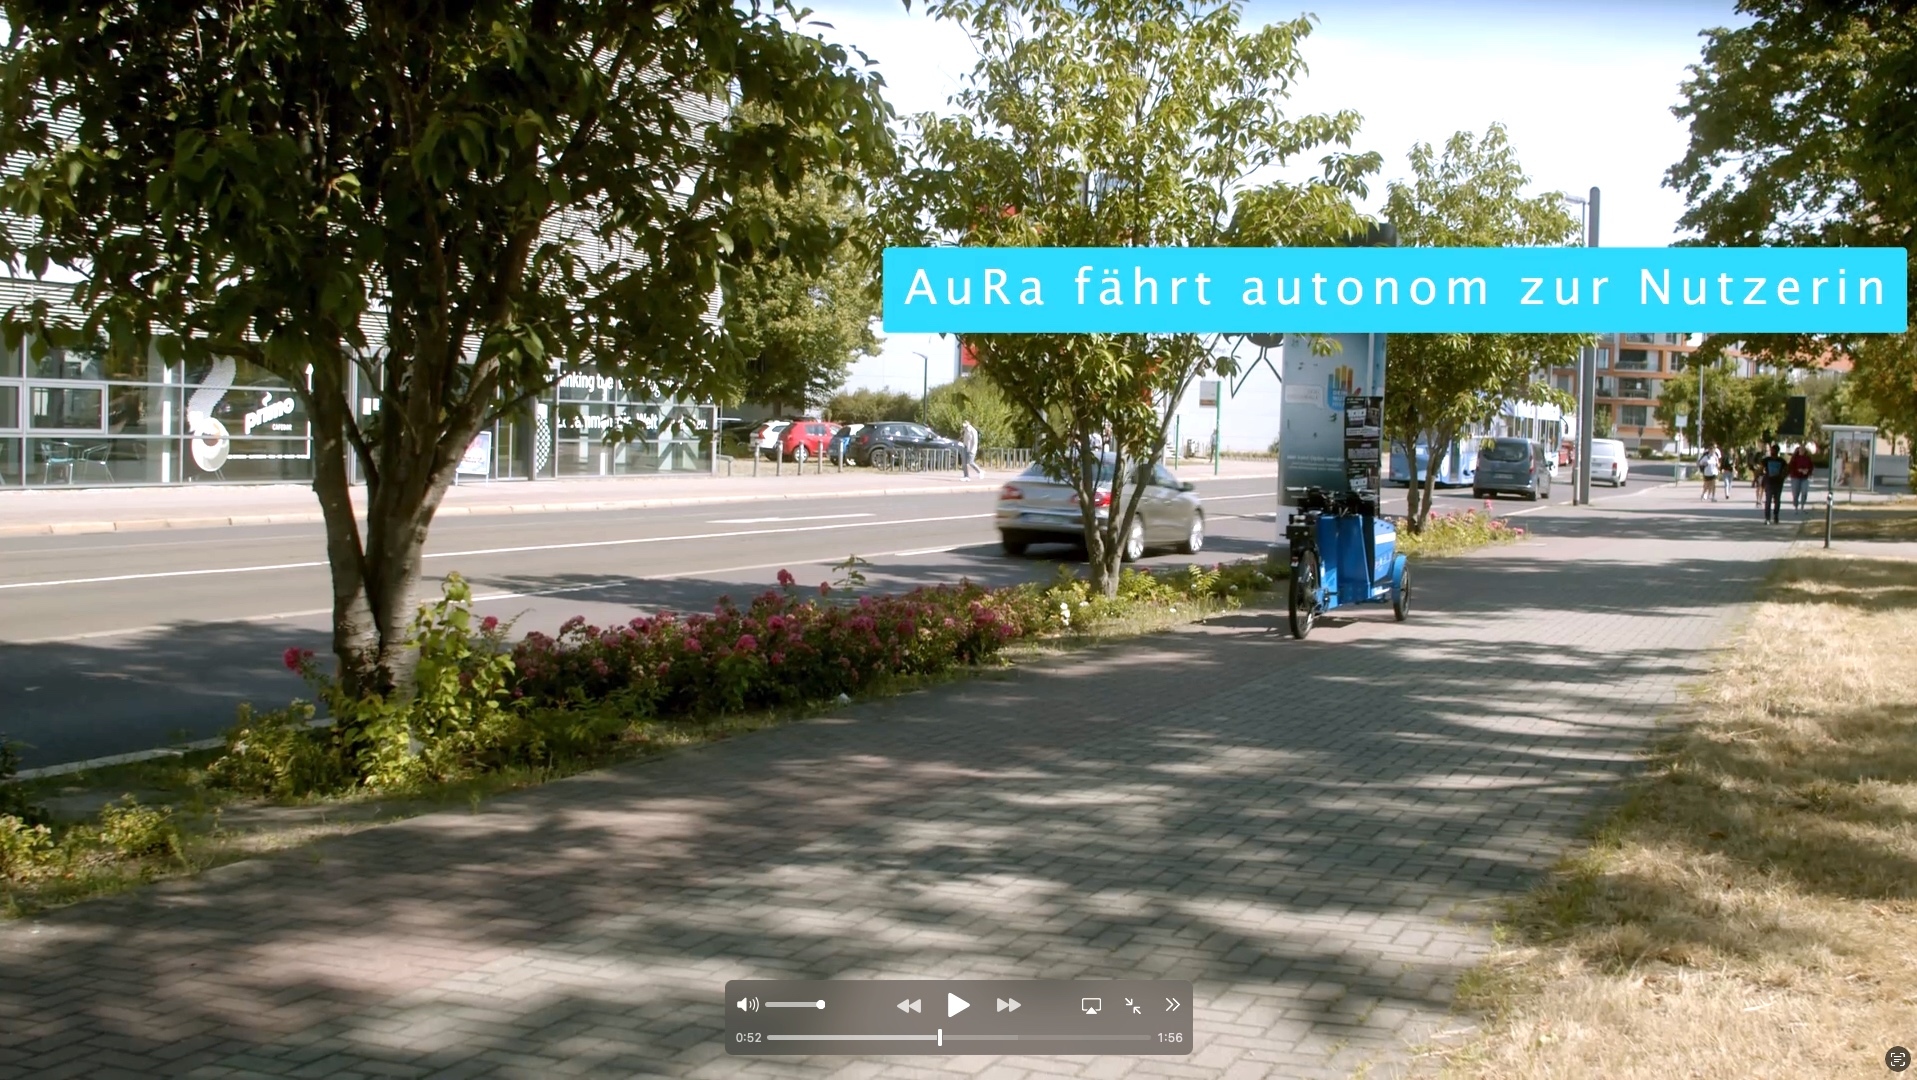 Foto: Auf einem Radweg neben einer Straße ist das autonom fahrende Lastend AuRa zu sehen, dass auf die betrachtende Person zufährt